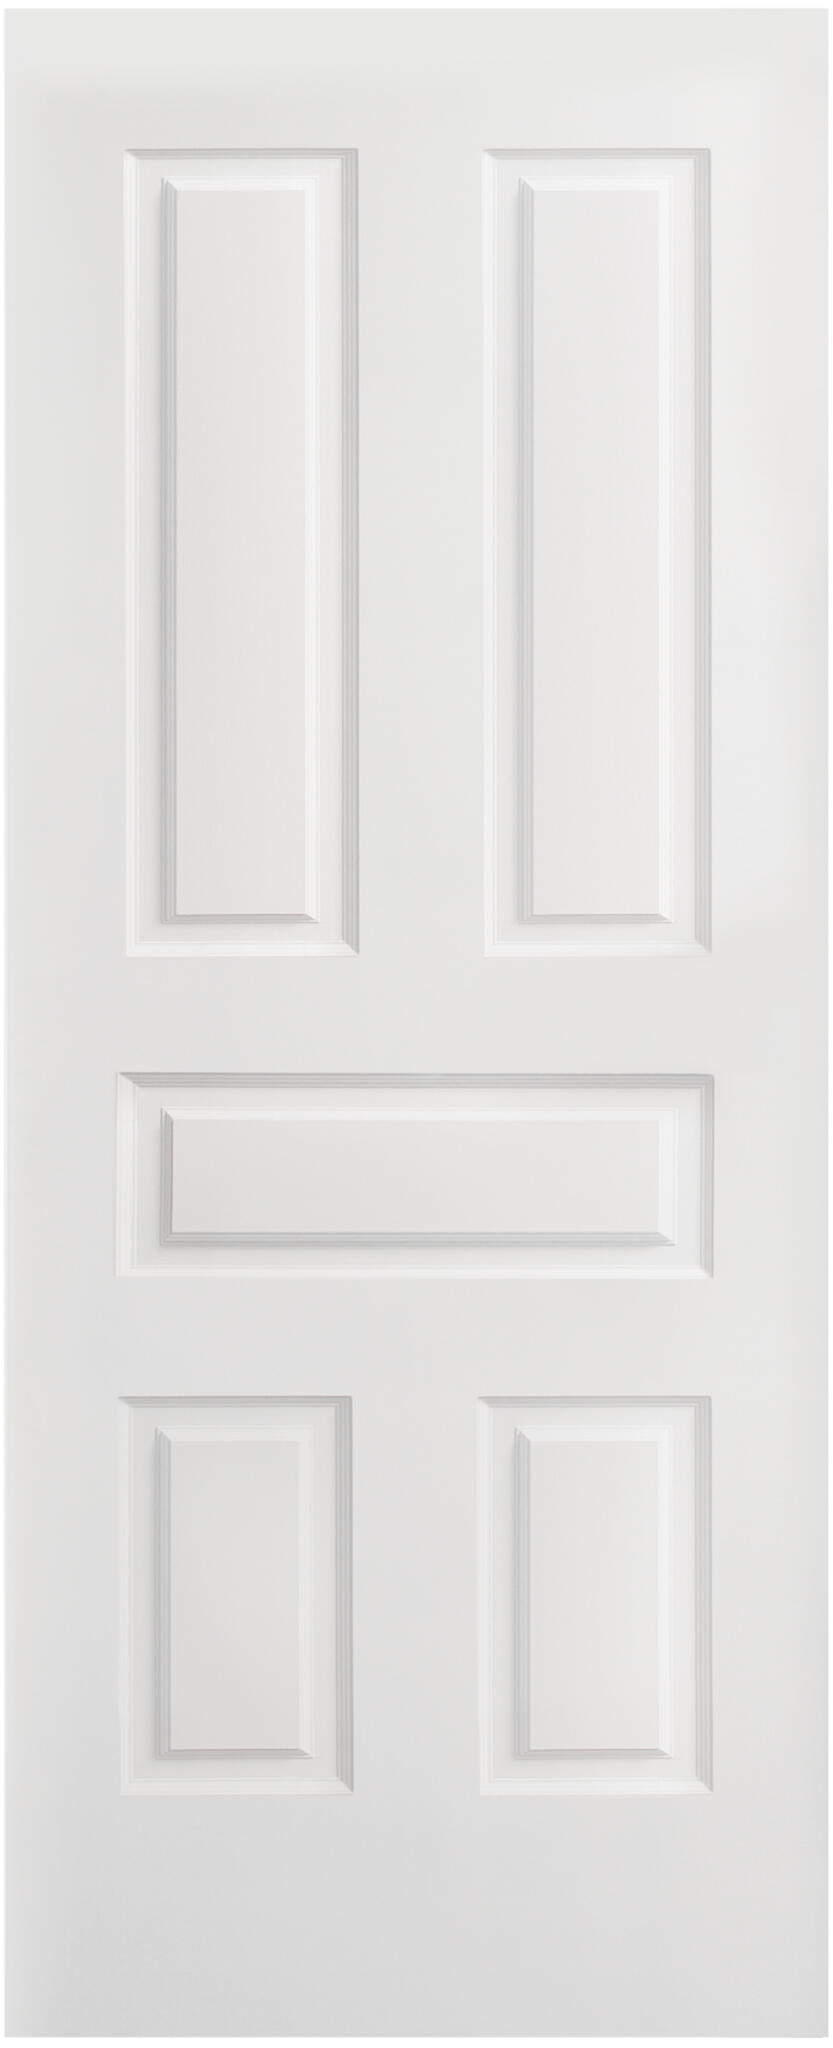 Puerta corredera indiana plus blanco de 92,5x203cm